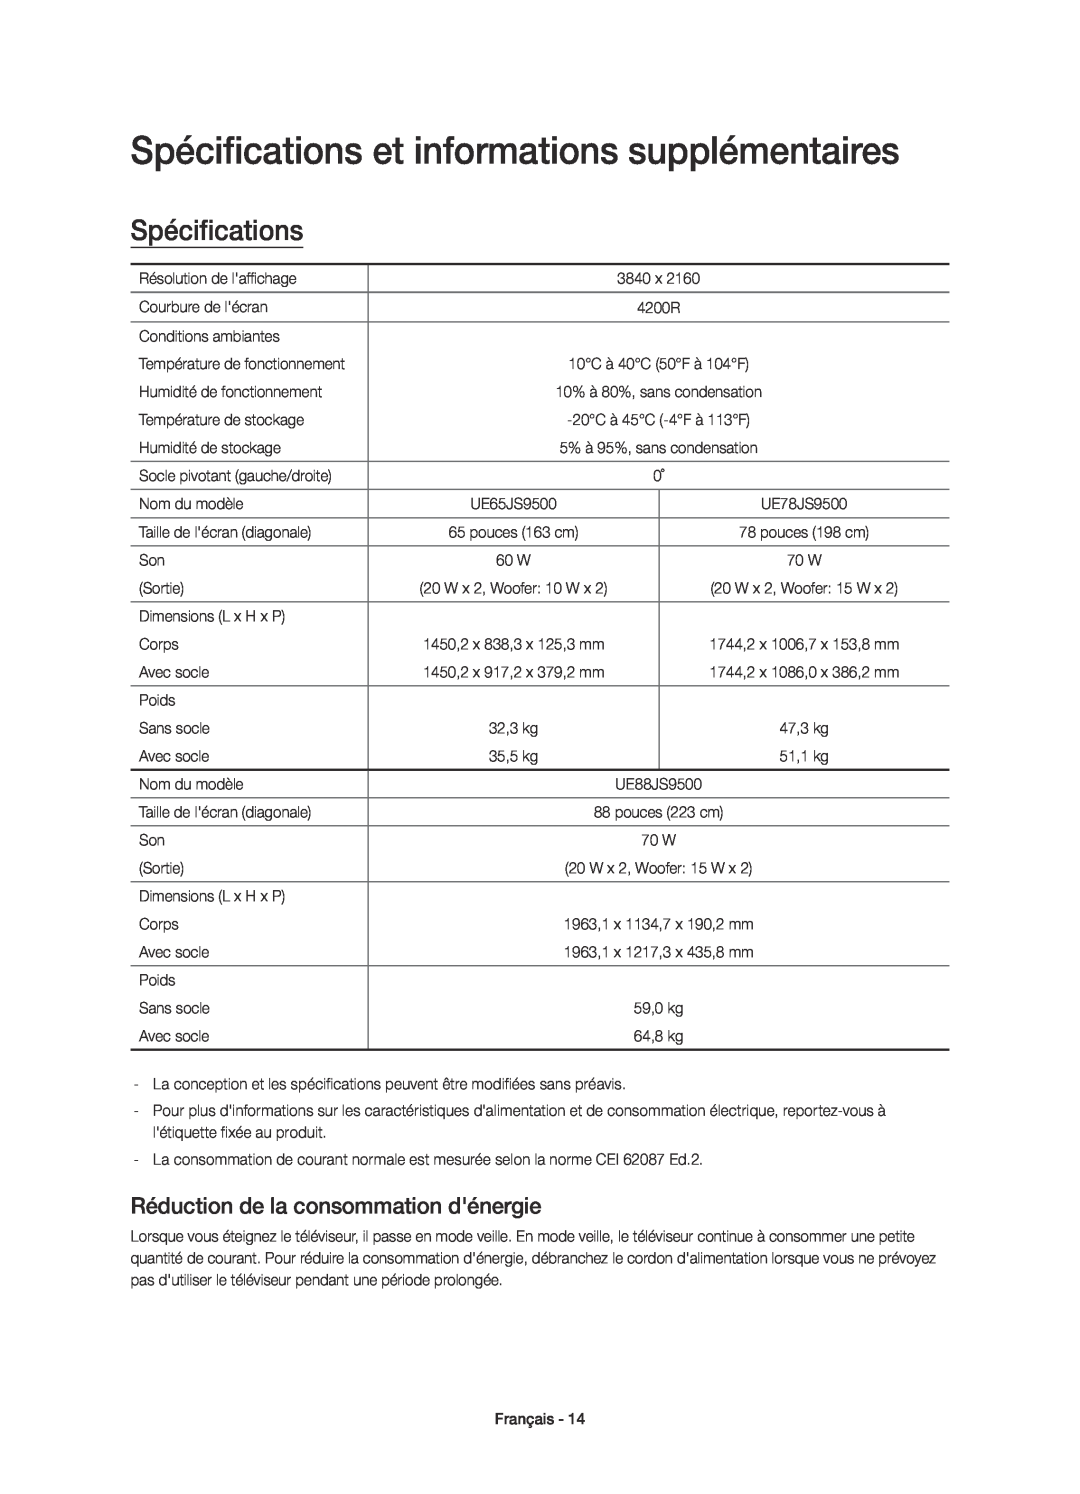 Samsung UE78JS9500TXZT manual Spécifications et informations supplémentaires, Réduction de la consommation dénergie 